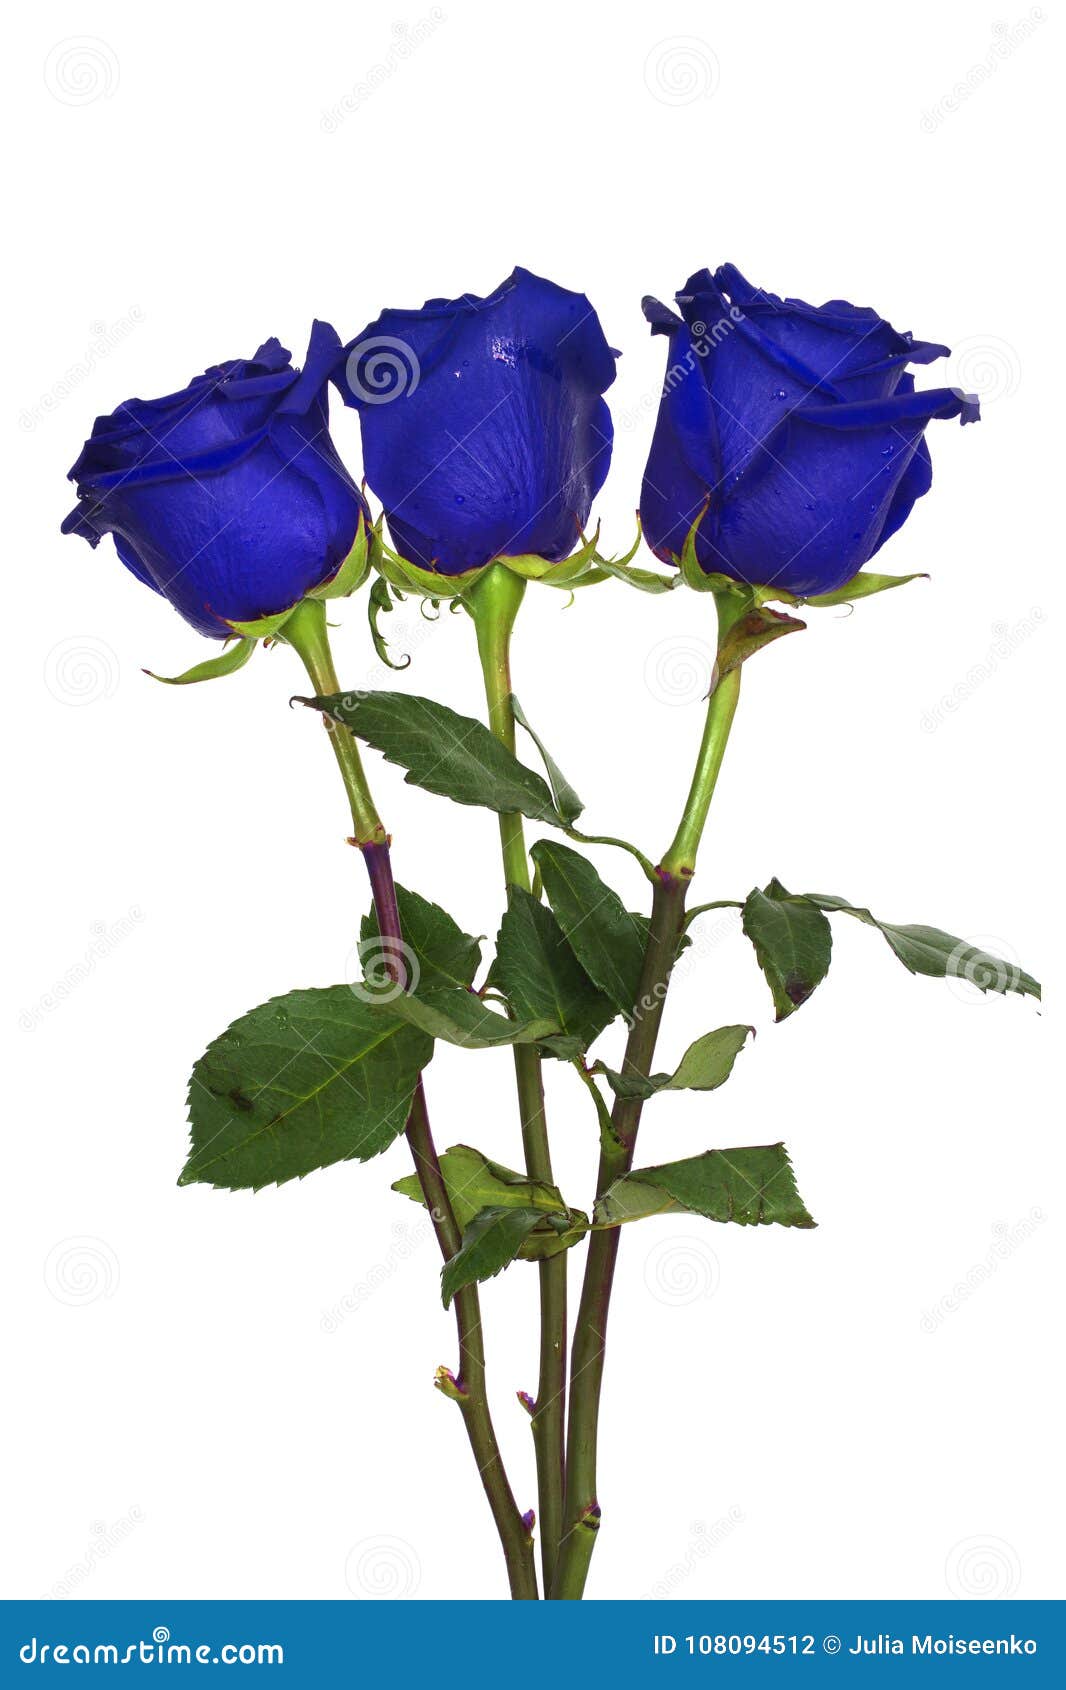 450 Rosas Azules Y Rojas Fotos de stock - Fotos libres de regalías de  Dreamstime